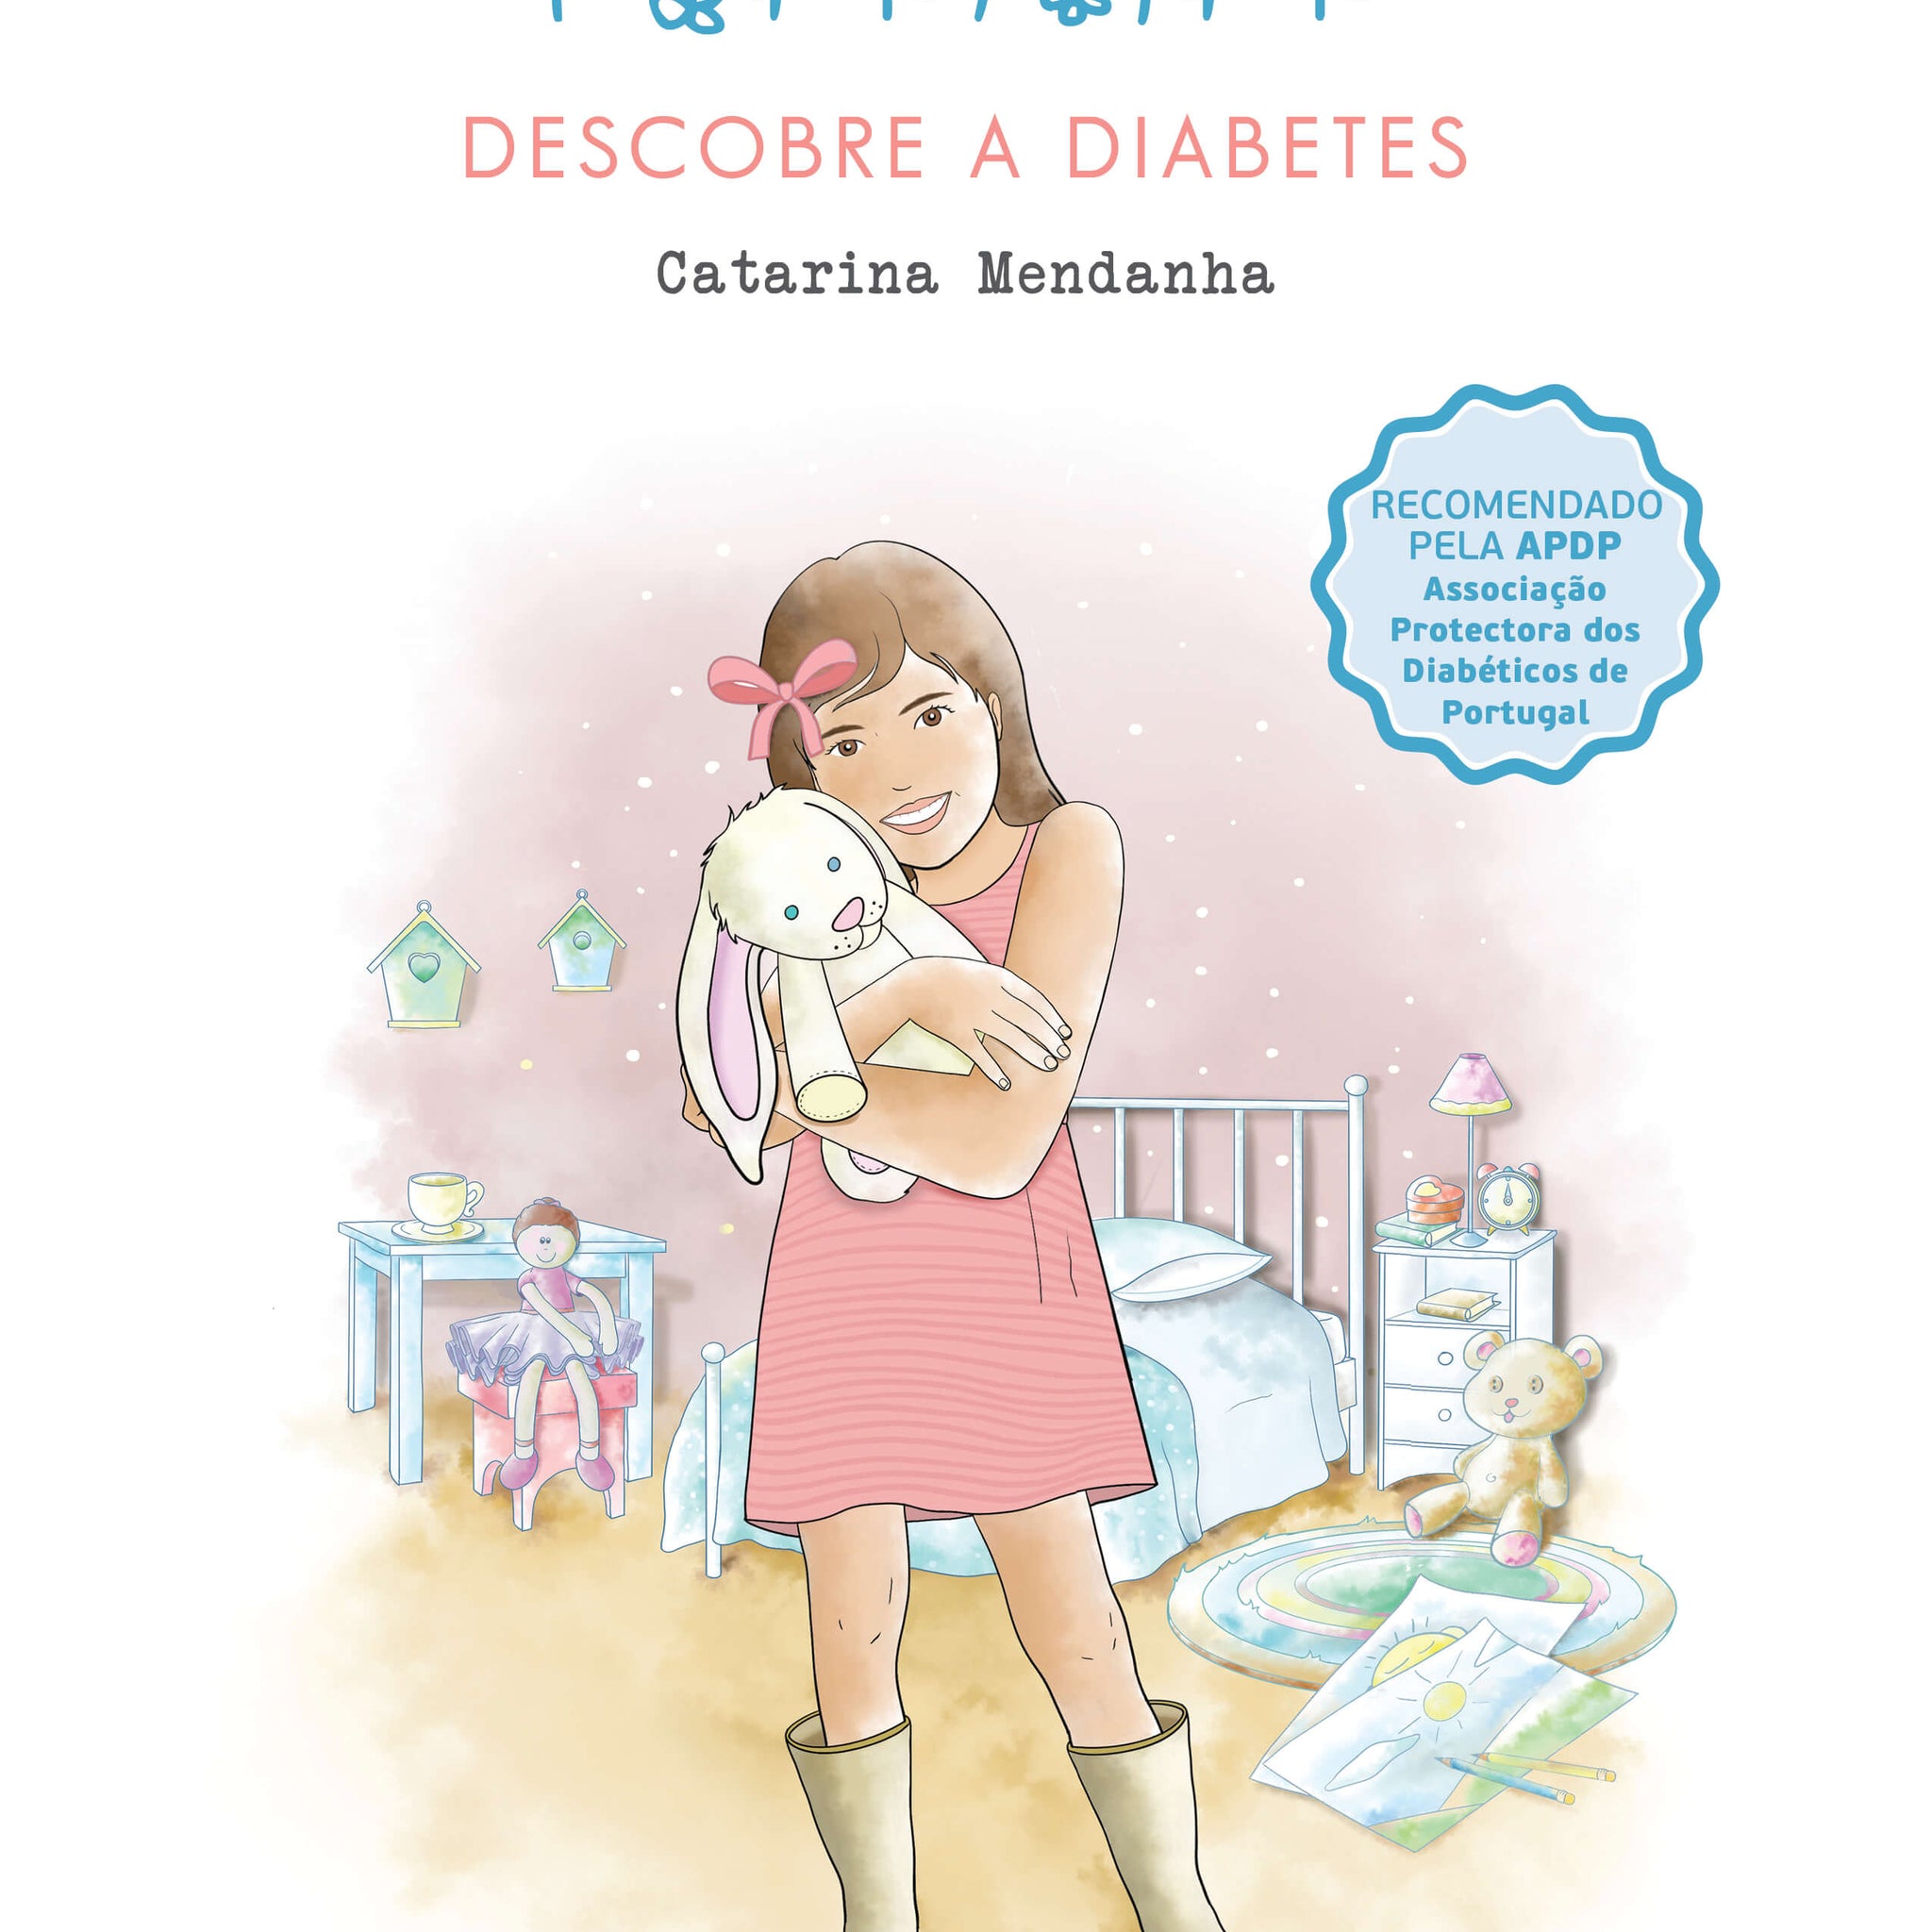 Maria Descobre a Diabetes